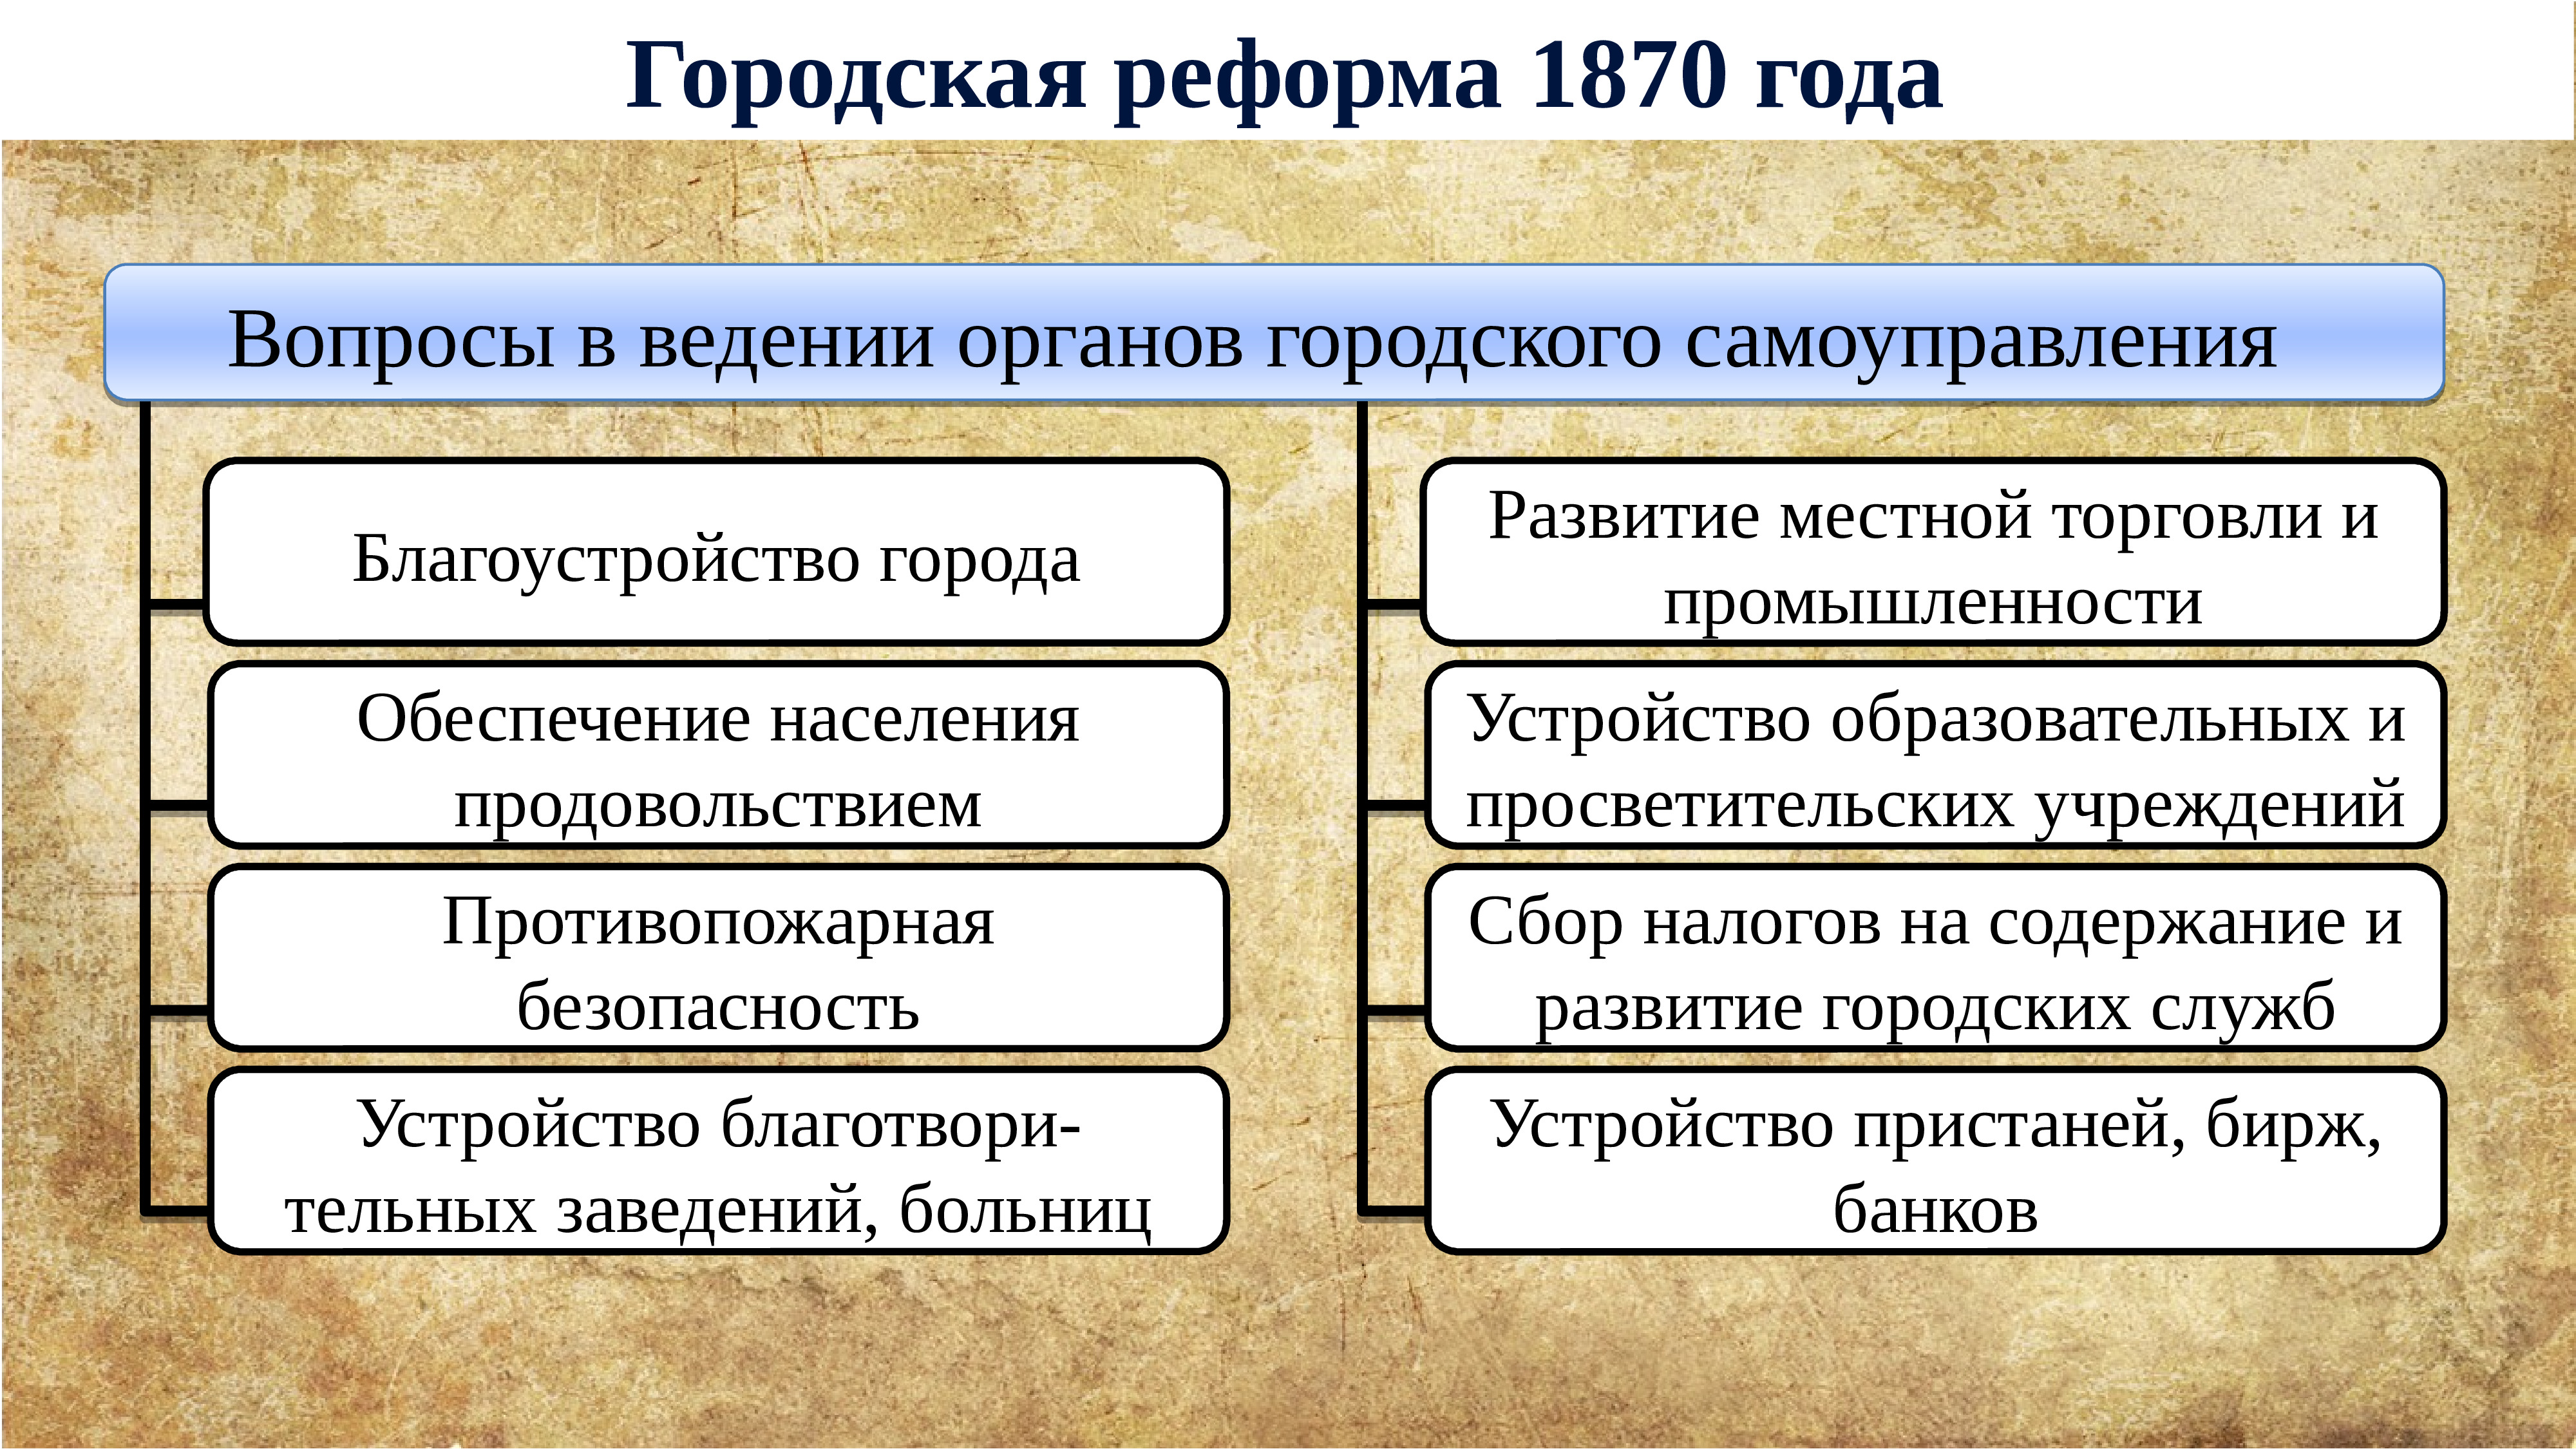 Сокращение срока дворянской службы до 25 лет. Губернская реформа 1860-1870. Внутренняя политика Екатерины 2.